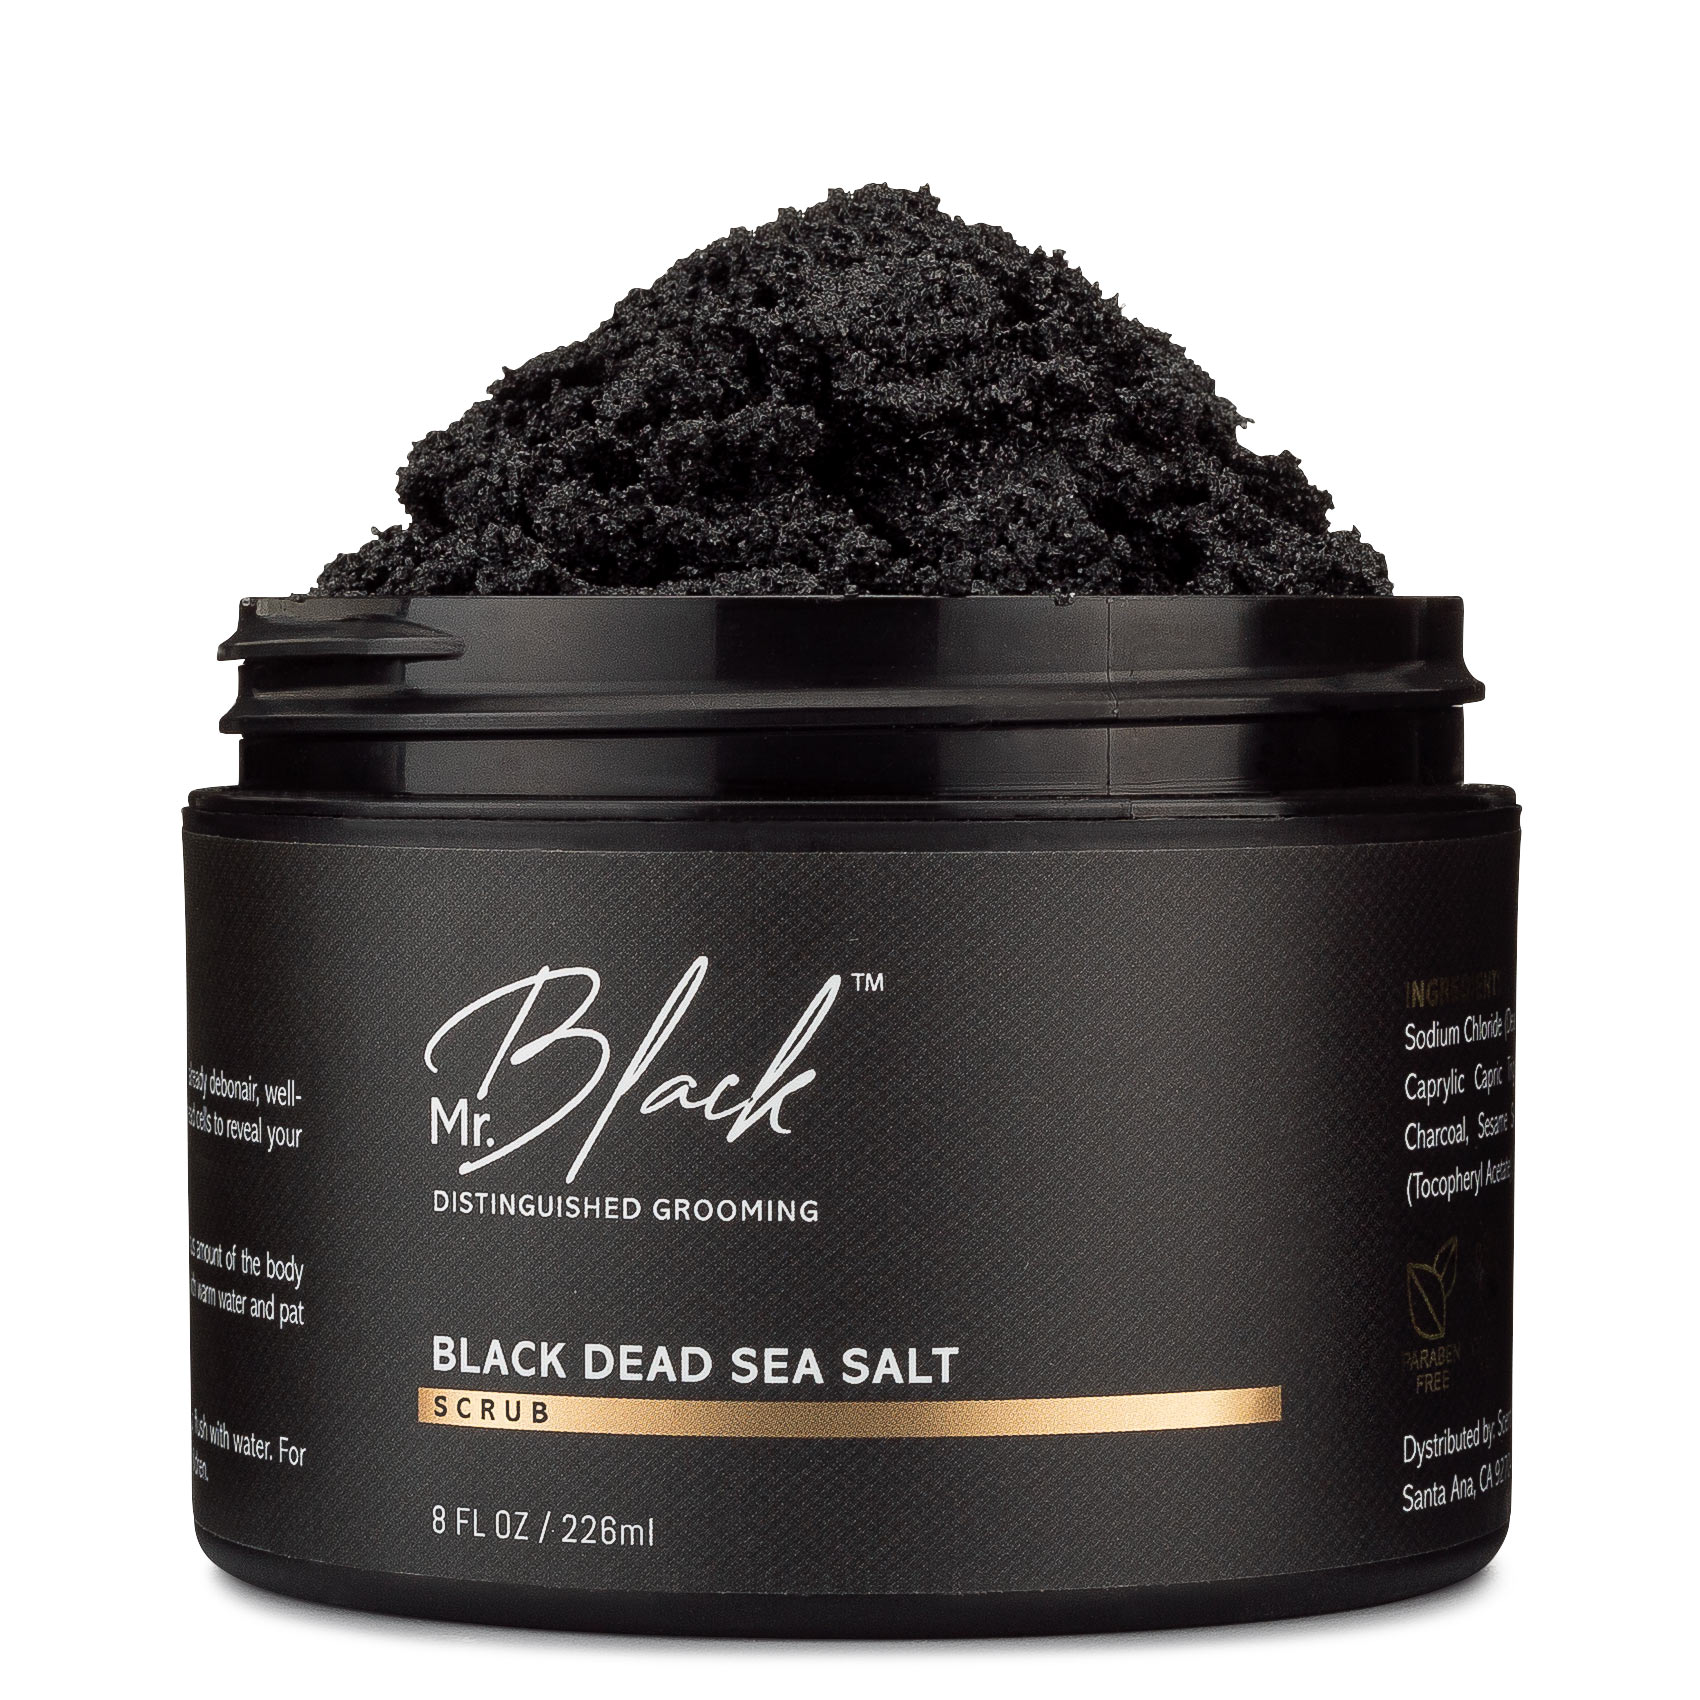 Black Dead Sea Salt Scrub Mr. Black Image